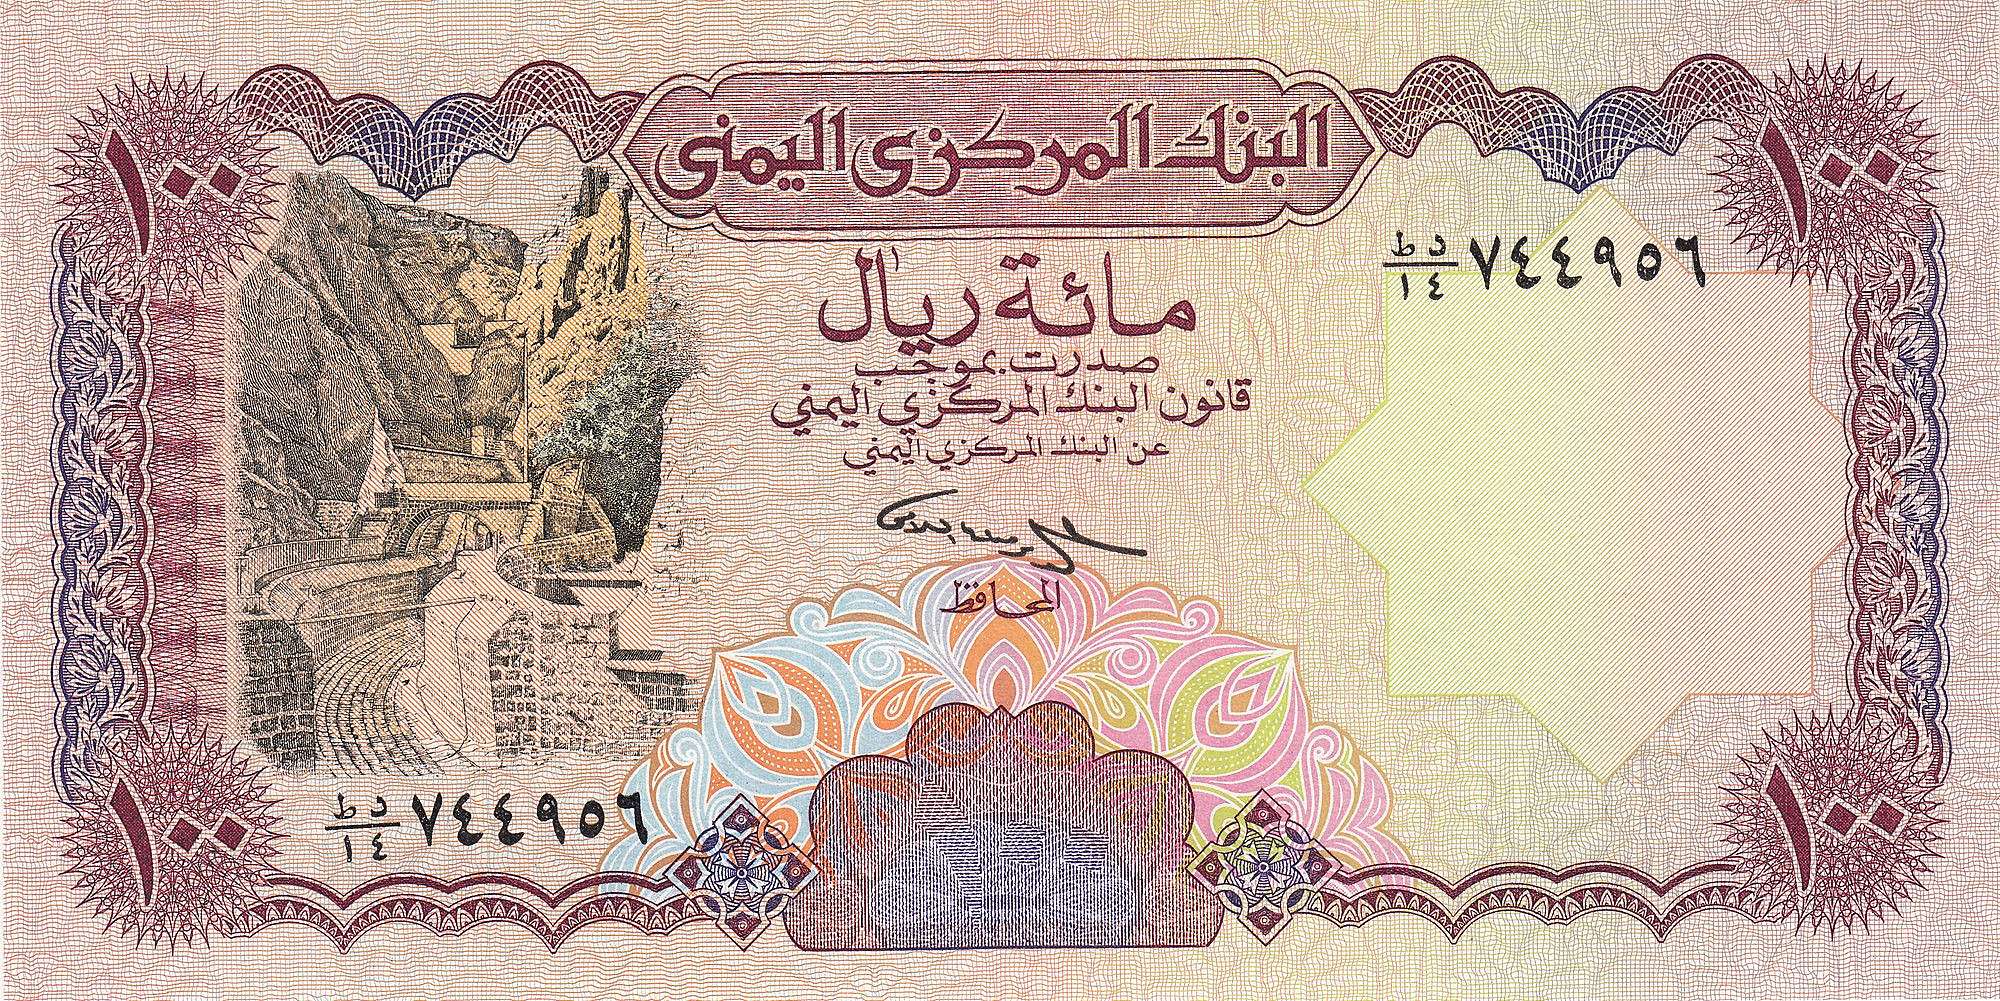 السعر الآن : سعر كبير غير متوقع يسجلة الريال اليمني امام العملات الاجنبية فاجئ الجميع هذه اللحظة!